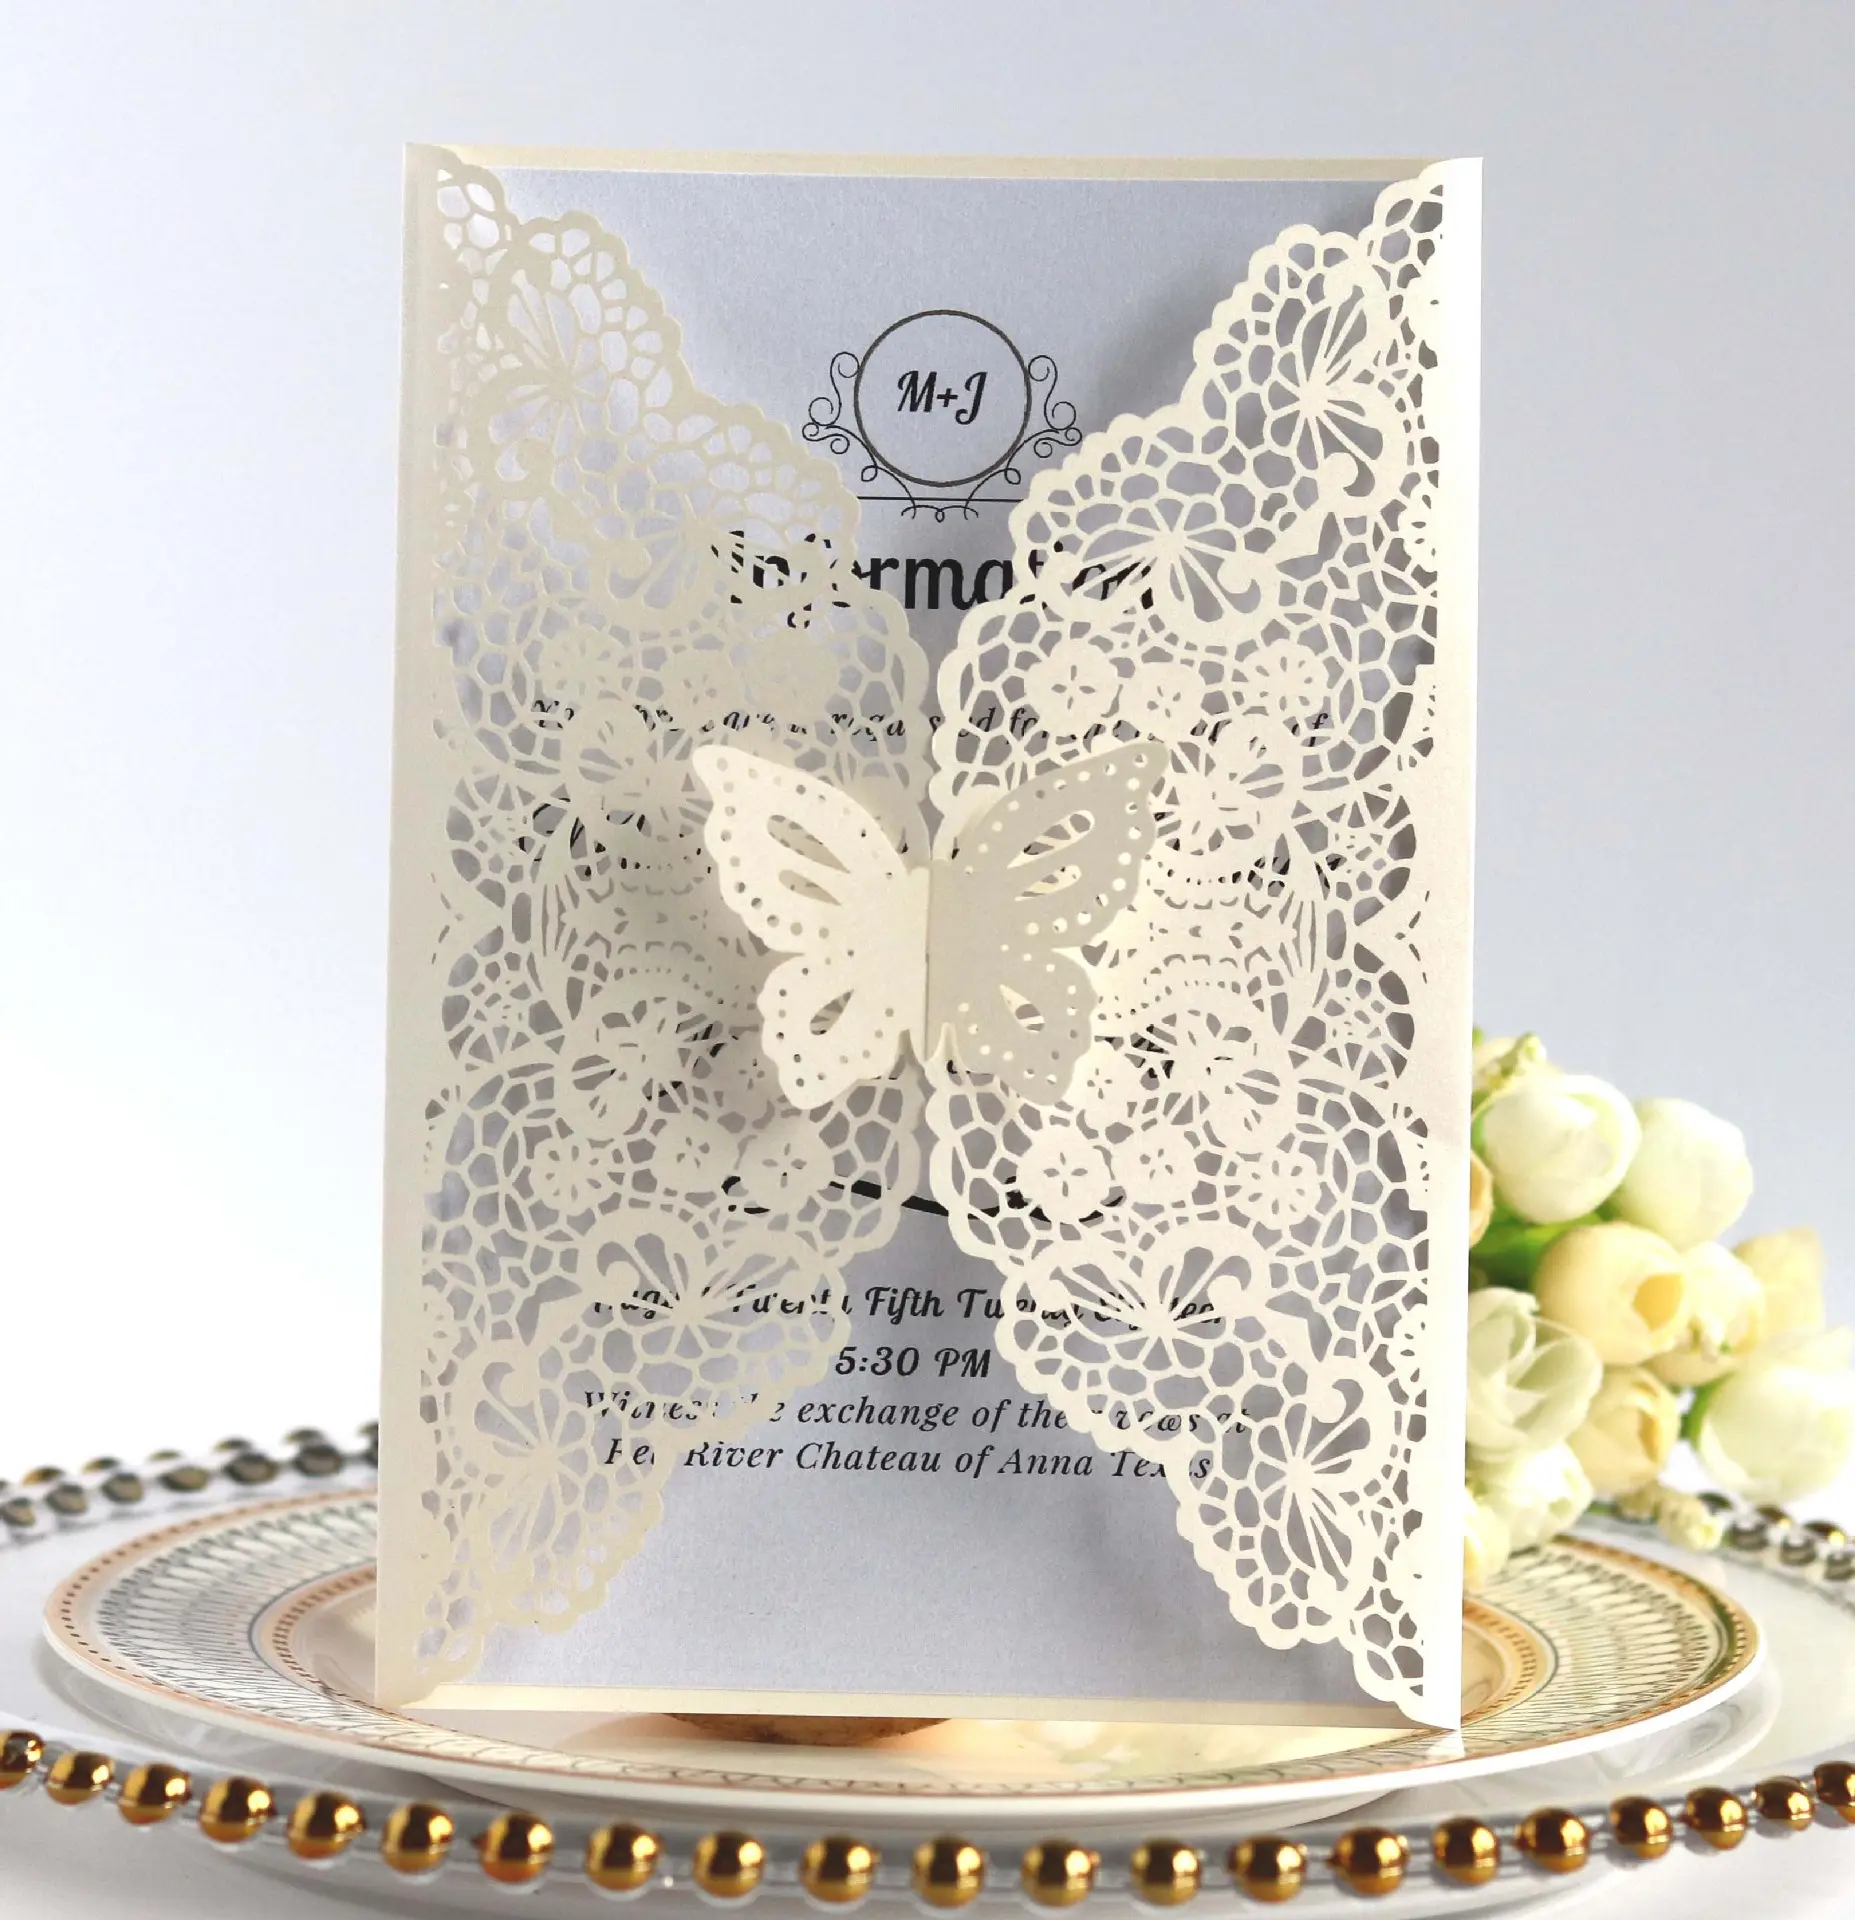 Couvertures d'invitation de mariage personnalisées découpées au laser en forme de papillon blanches et pages de cartes d'invitation de mariage élégantes blanches